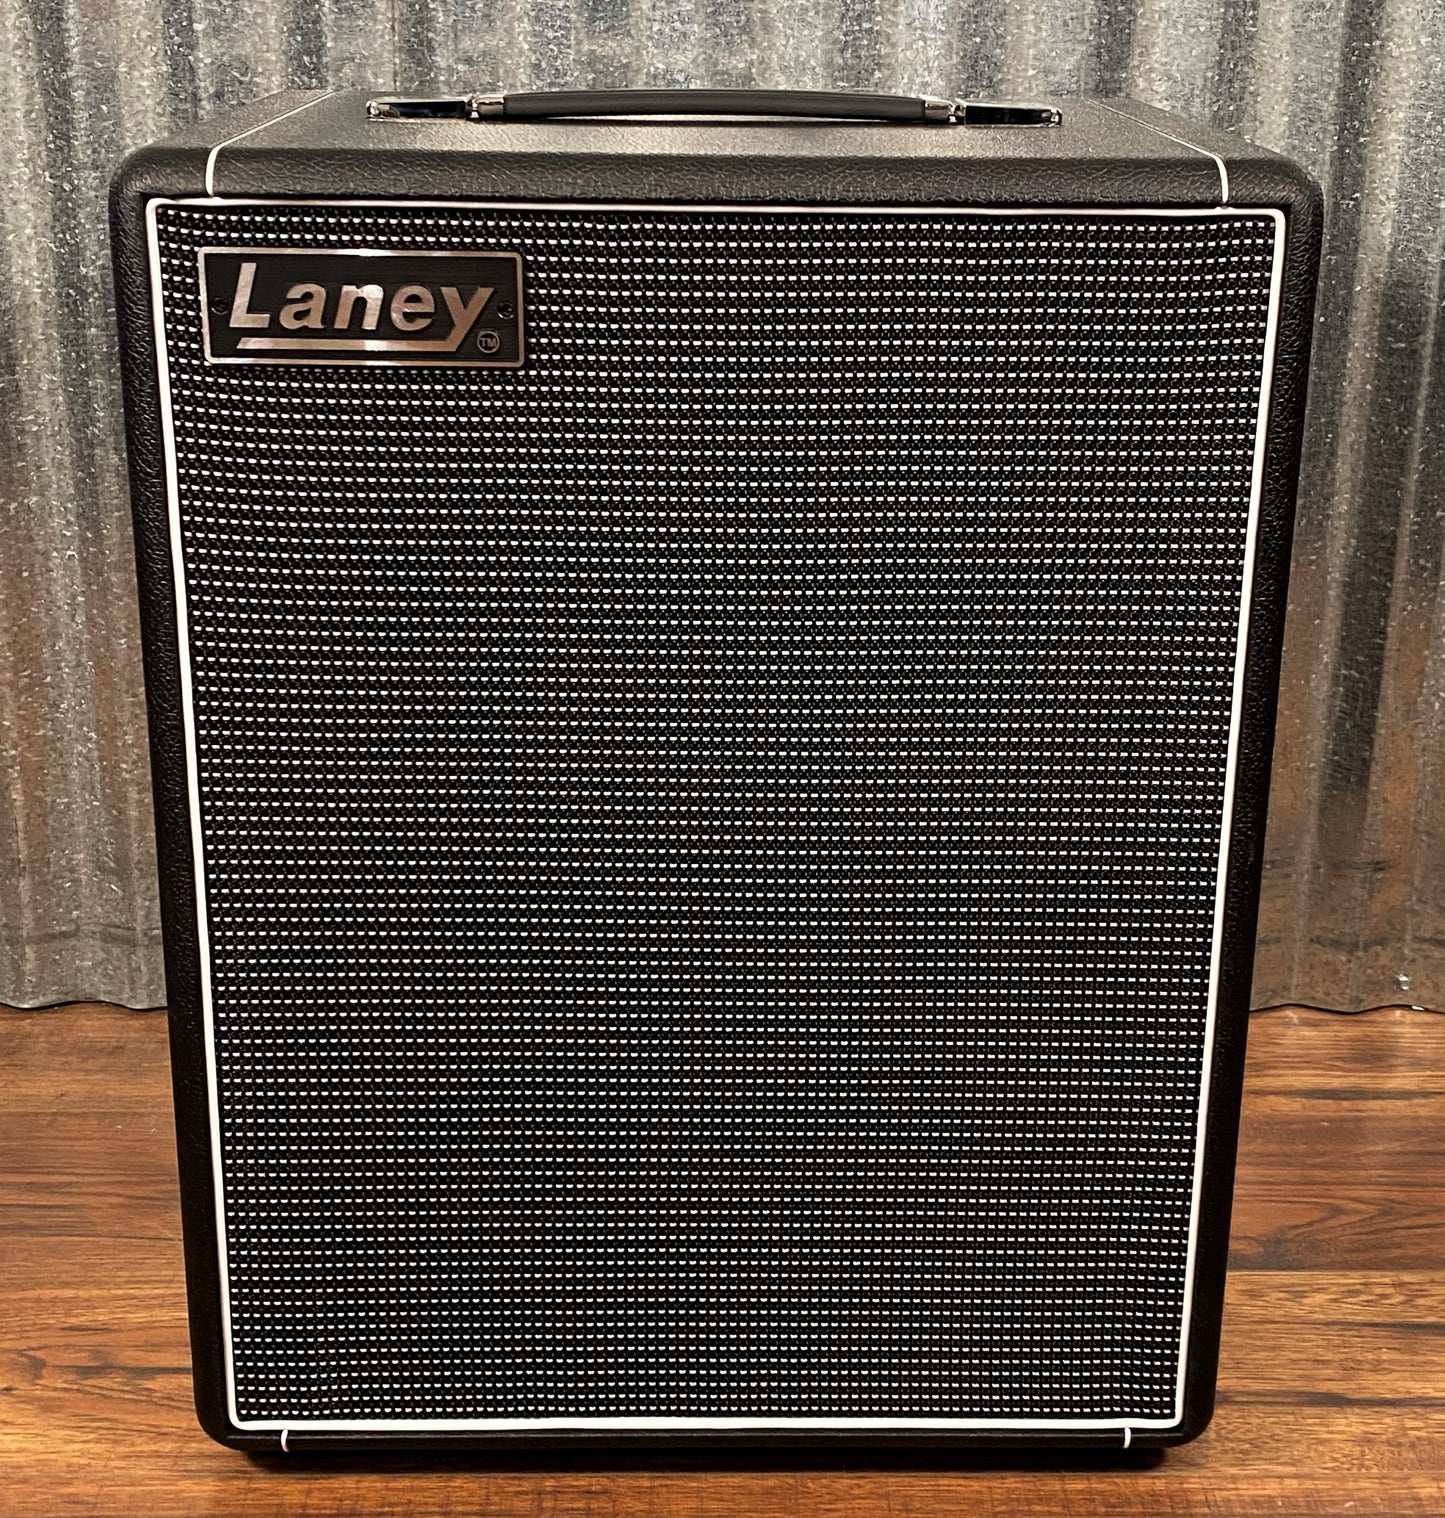 Laney Digbeth DB200-210 2x10" 200 Watt Two Channel Preamp Bass Combo Amplifier